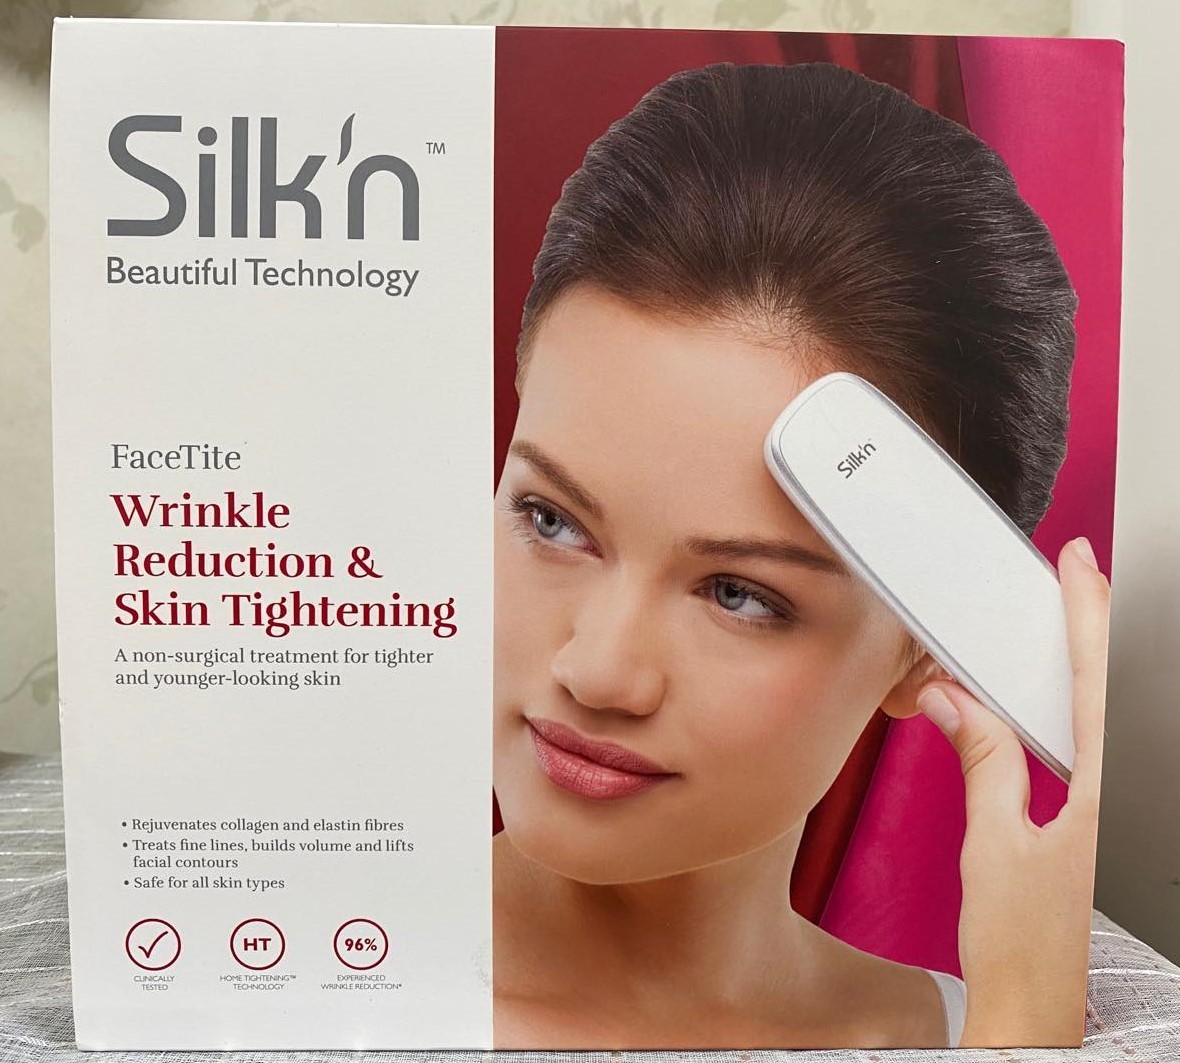 Silkn FaceTite ヨーロッパ第二世代 3 ソース rf 高周波美容器具顔整形器具家庭用ヨーロッパライン